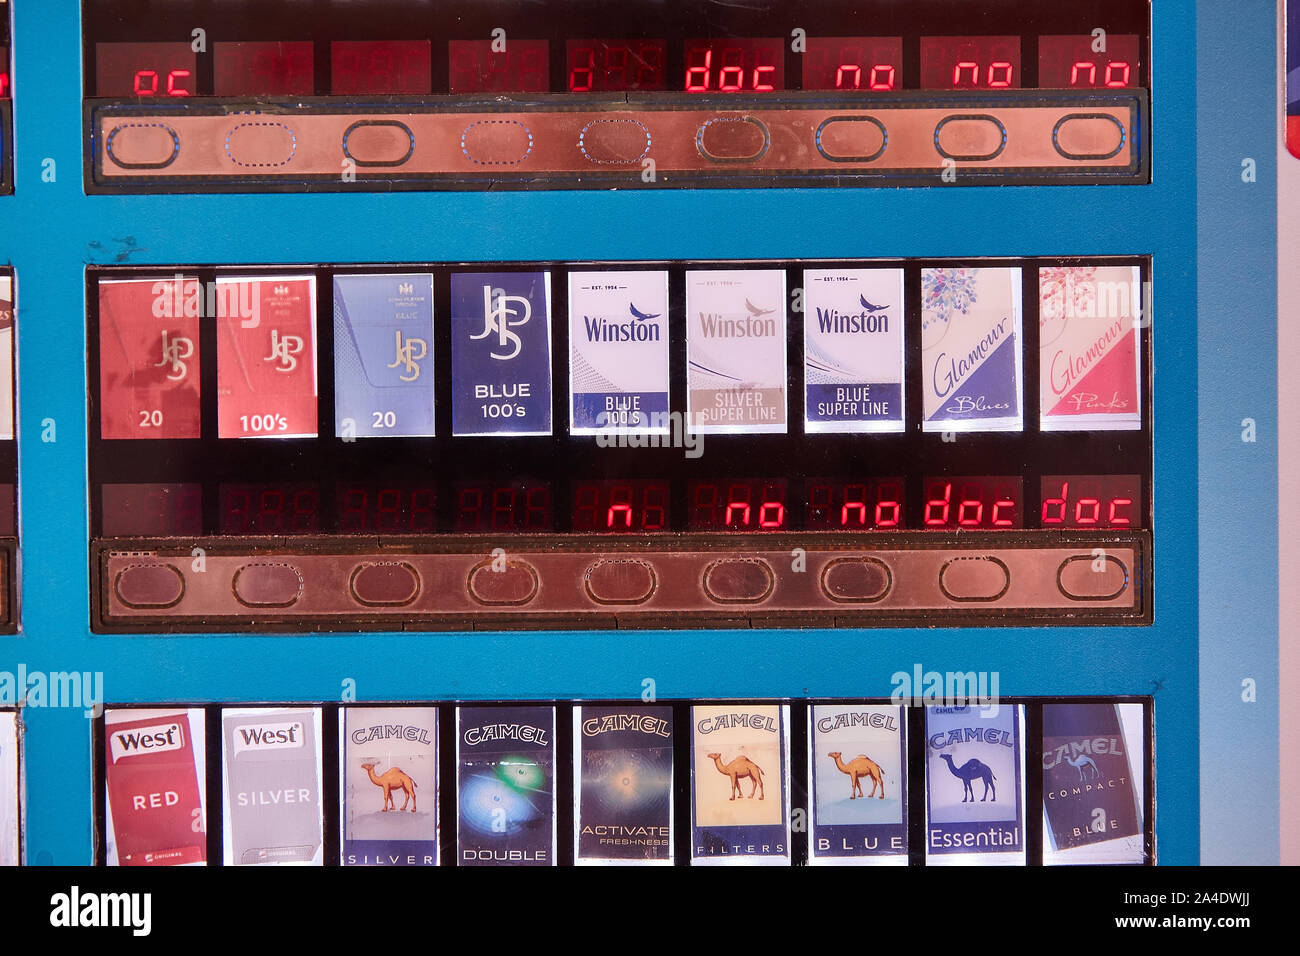 Cigarette vending machine 3 Stock Photo